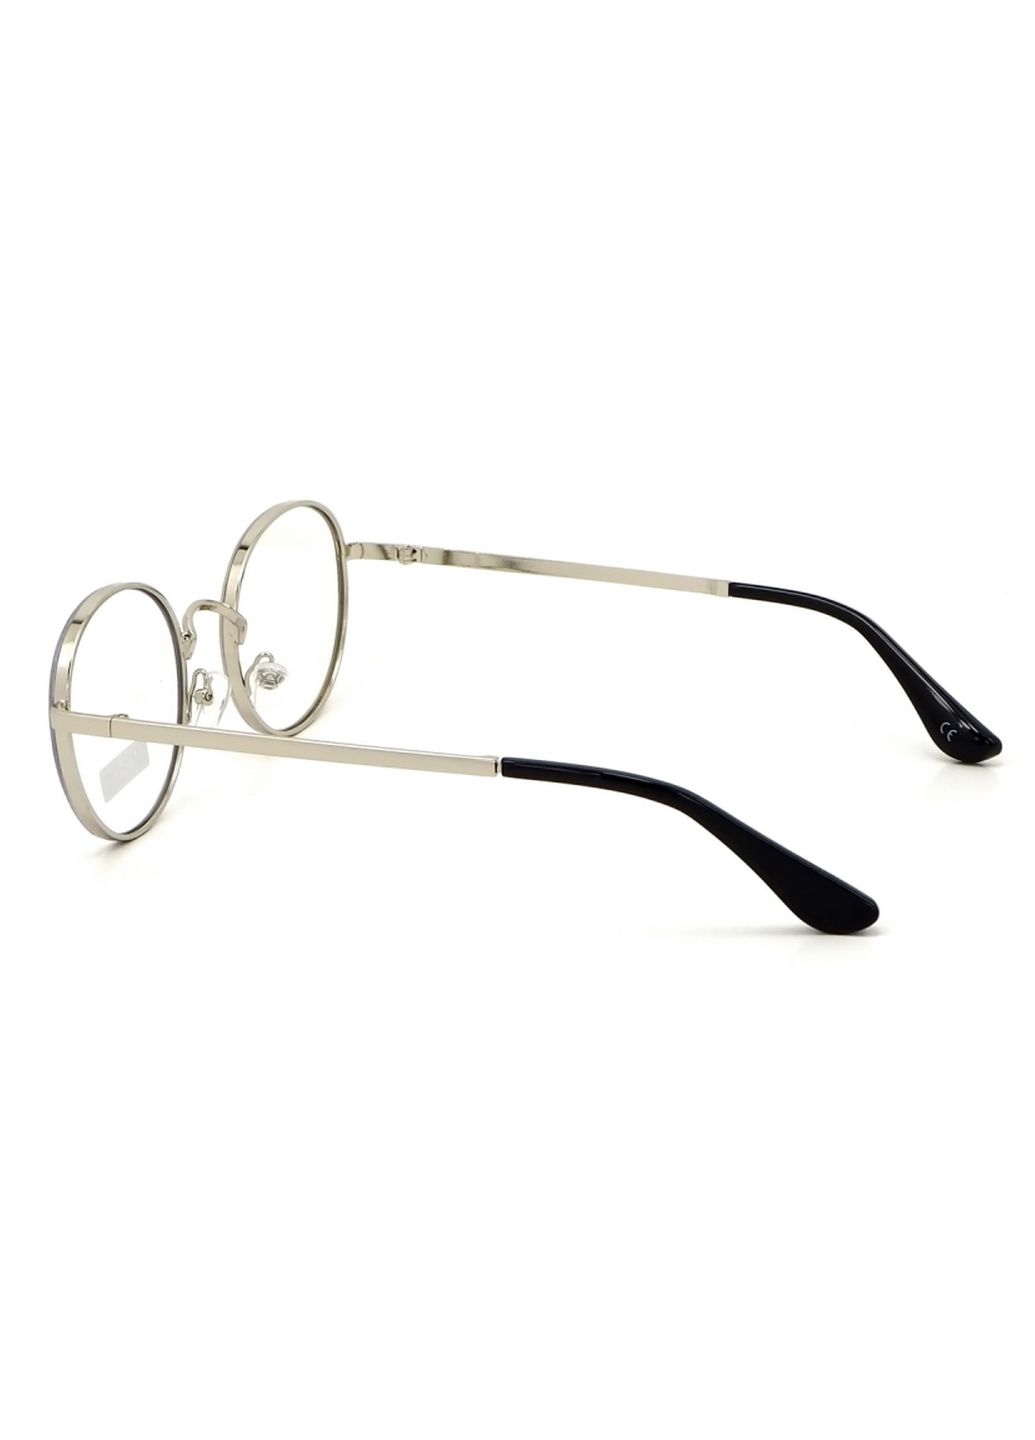 Купить Очки для работы за компьютером Cooper Glasses в серебристой оправе 124016 в интернет-магазине